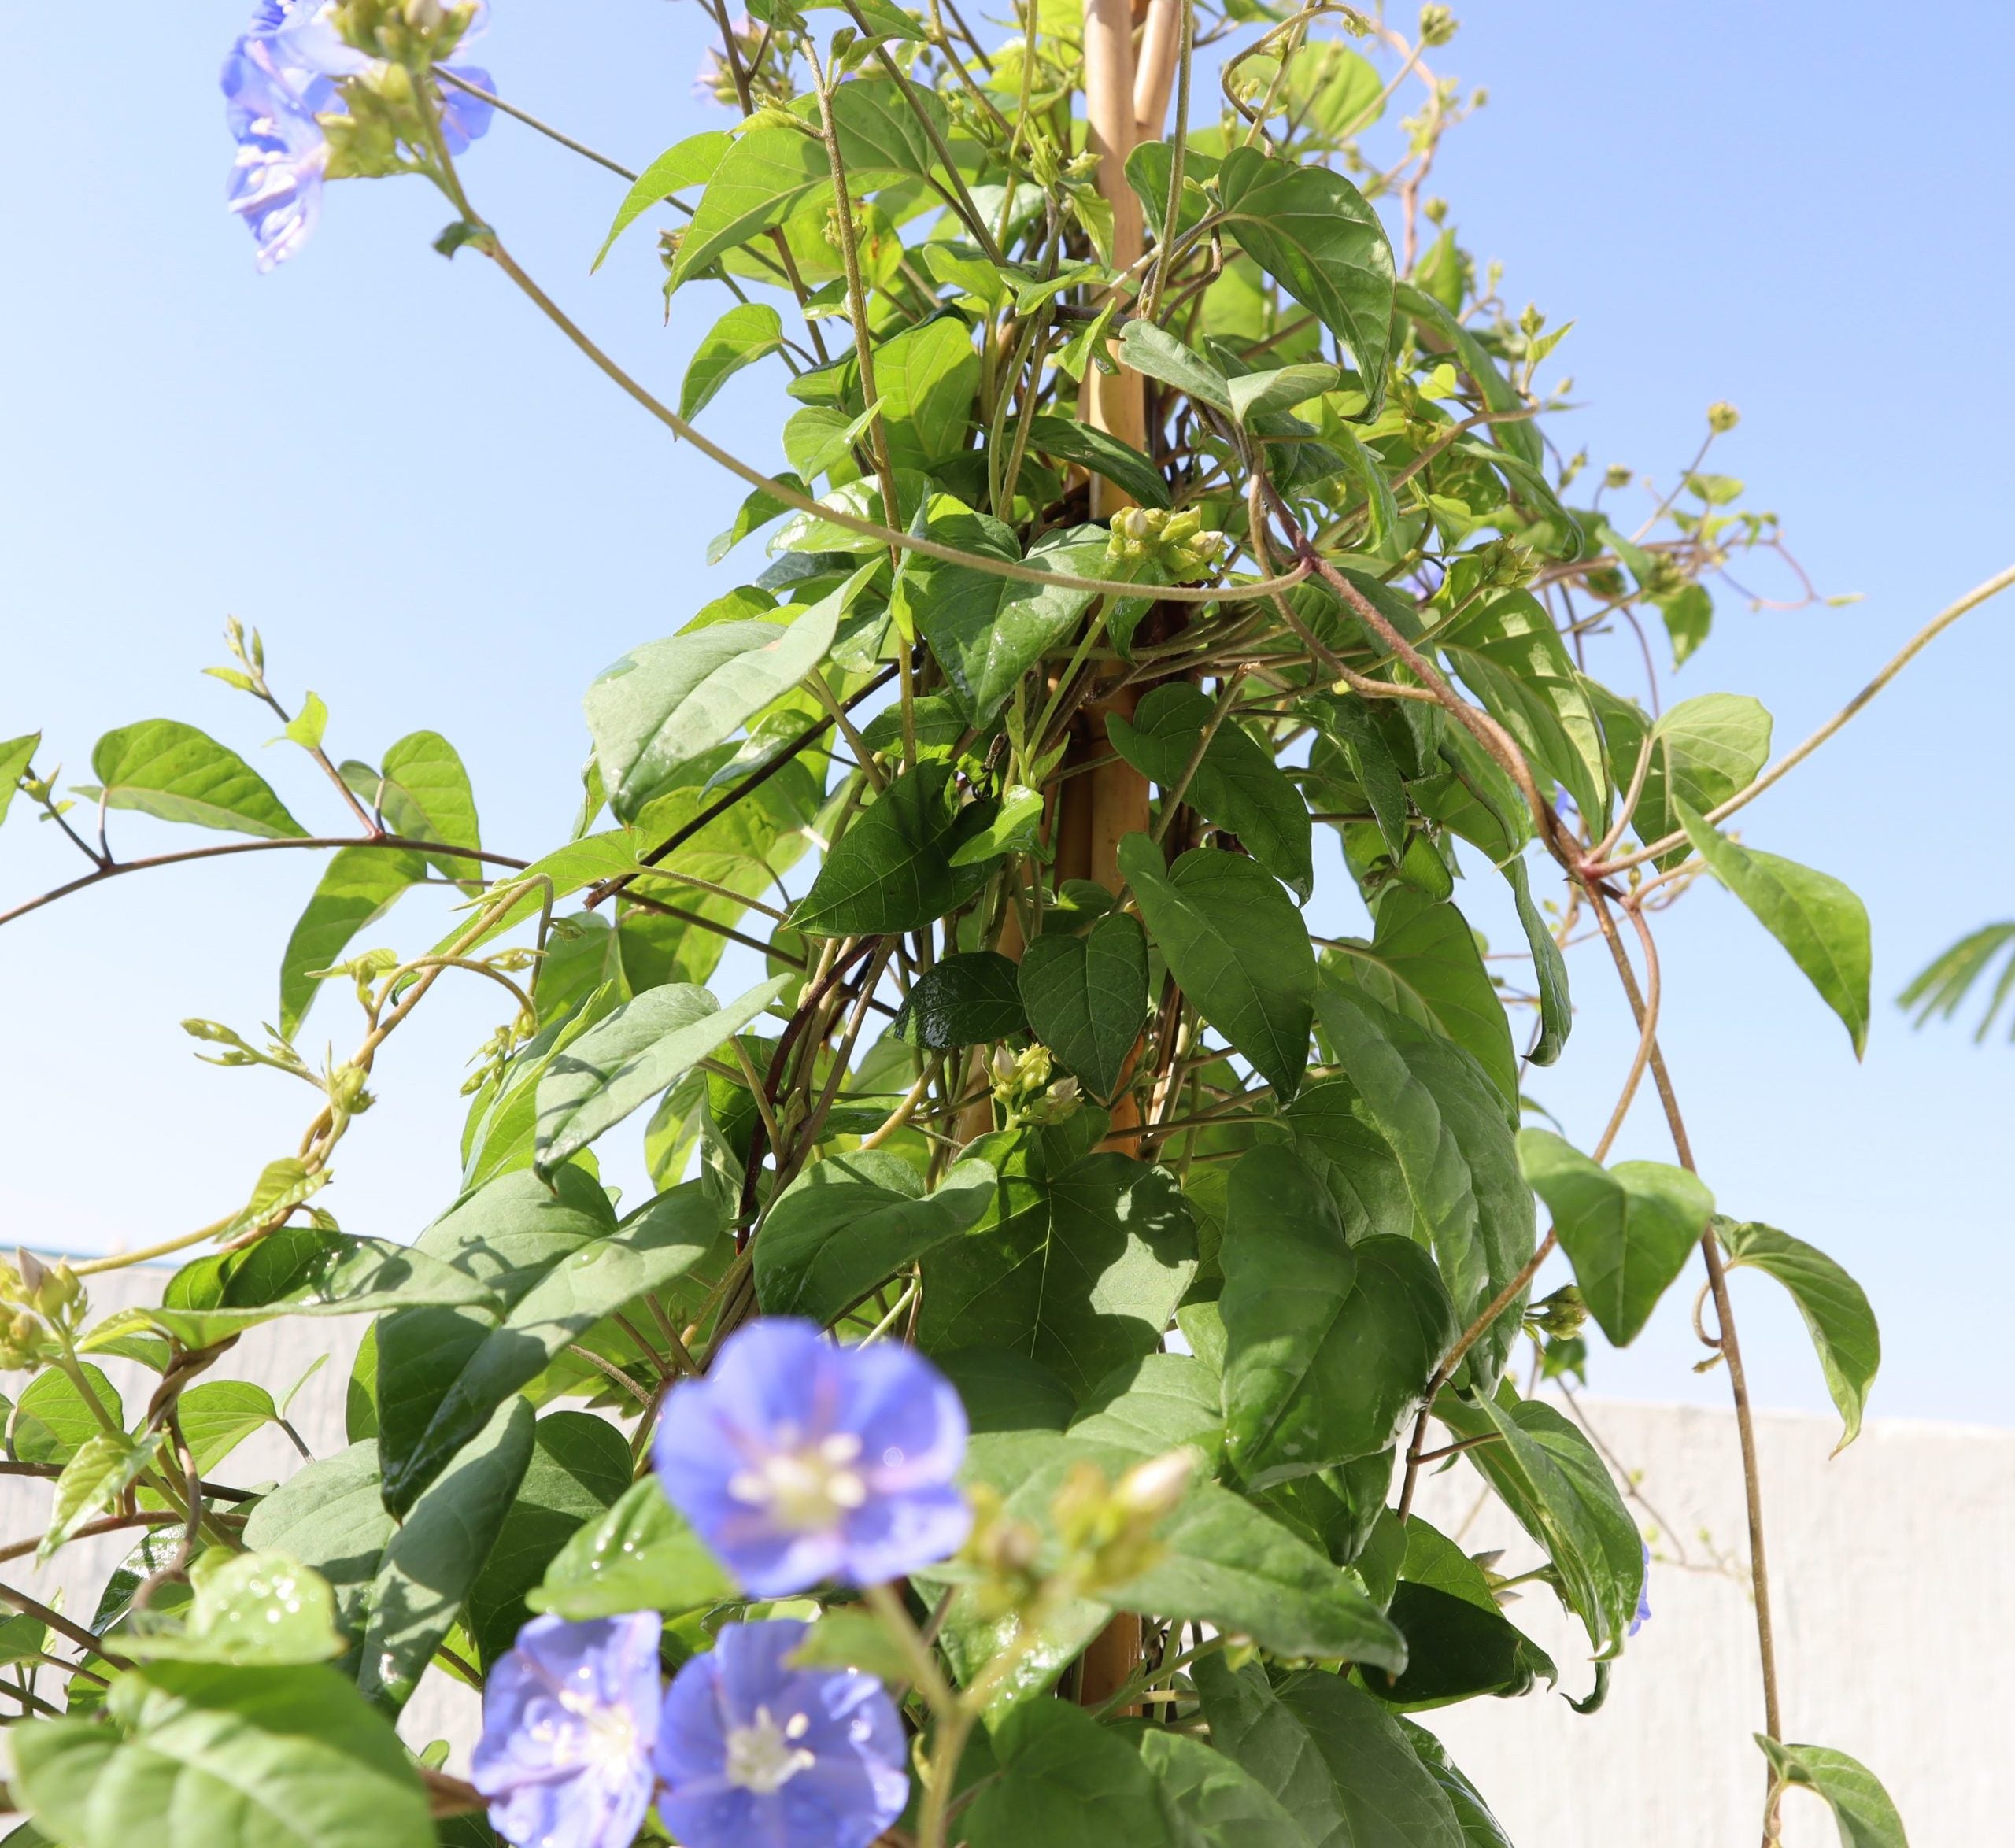 Jacquemontia pentantha “Sky Blue Cluster Vine”